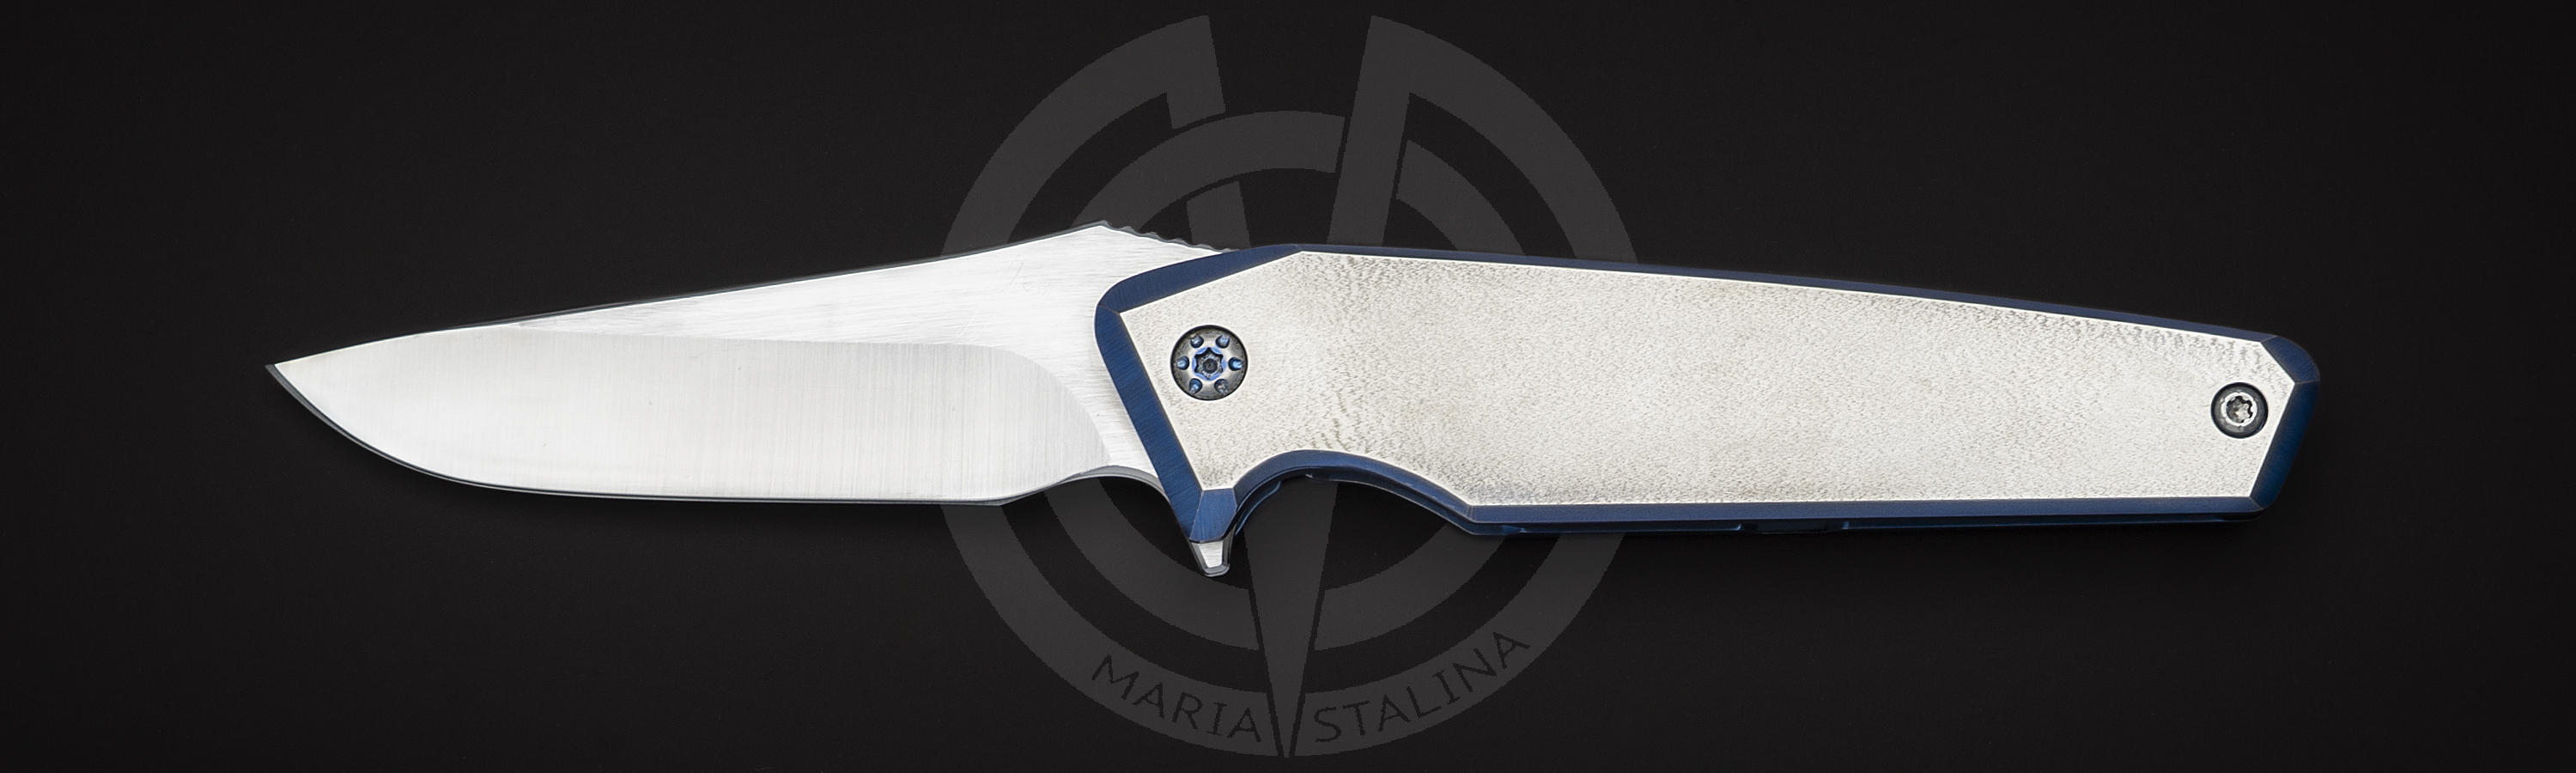 Mark 8 EDC folding knife by Will Moon Custom Knives